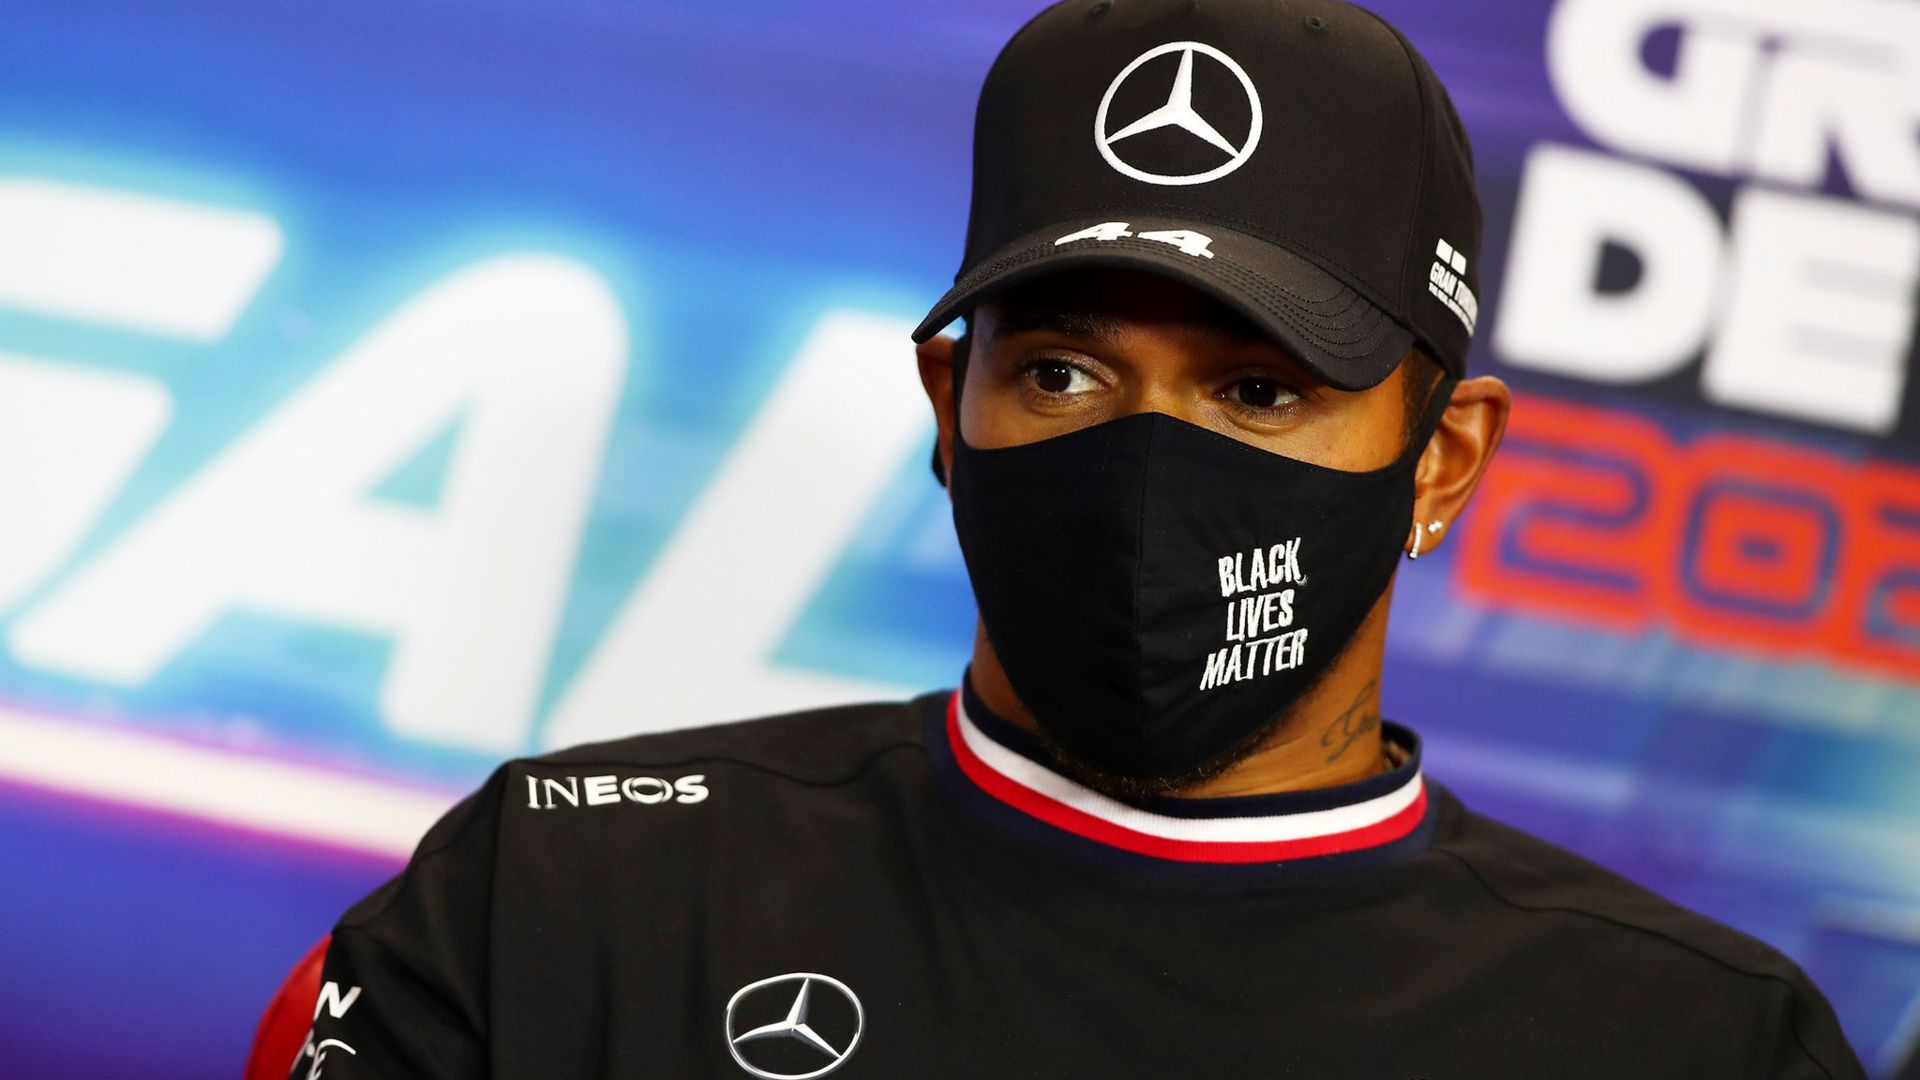 Mercedes-Superstar Lewis Hamilton sieht auch Chancen in einem Rennen in Saudi-Arabien.